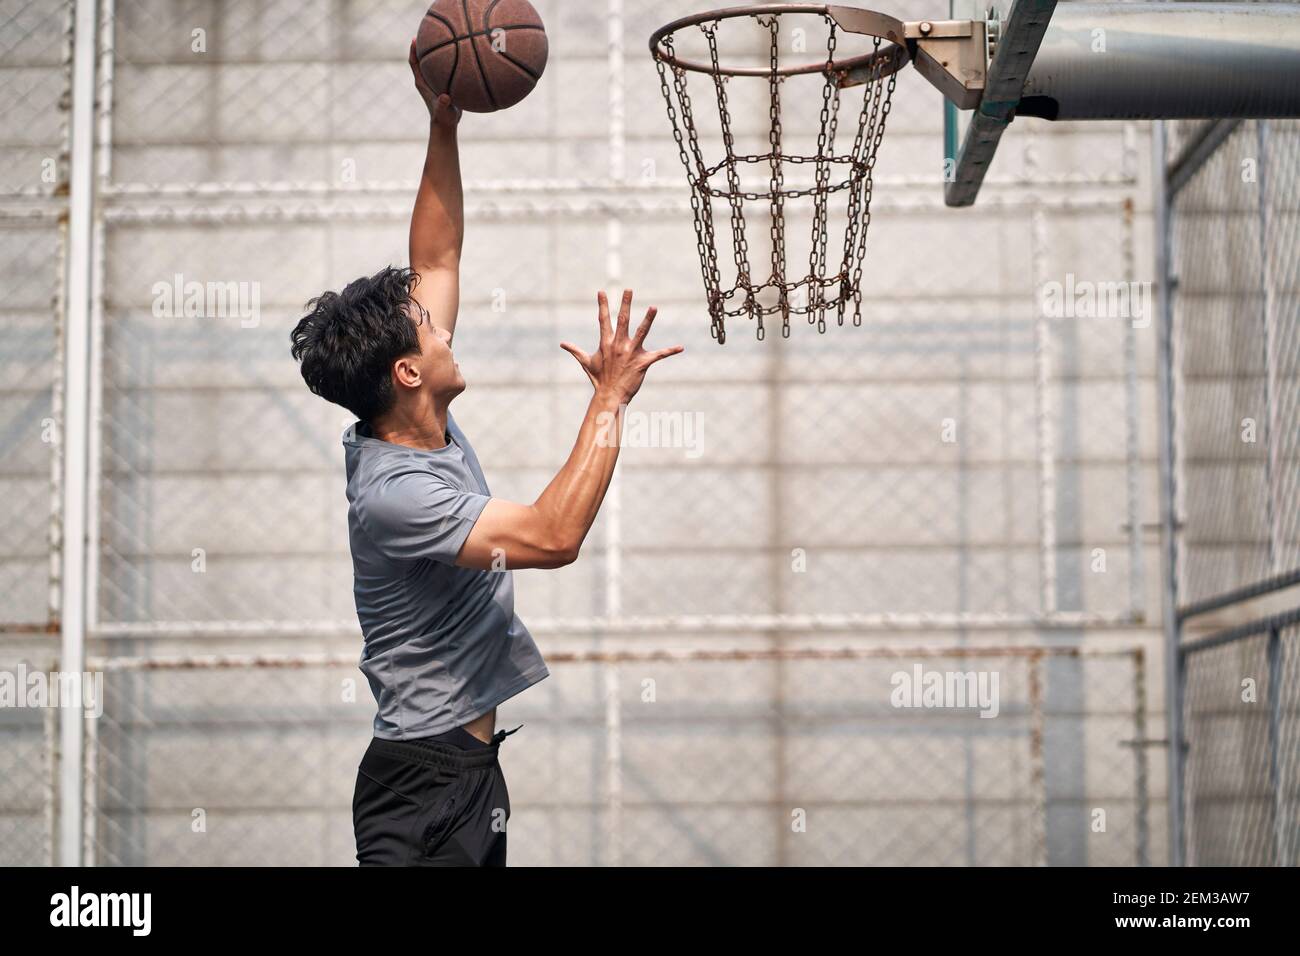 jeune homme asiatique adulte joueur de basket-ball essayant une dunk sur un terrain extérieur Banque D'Images